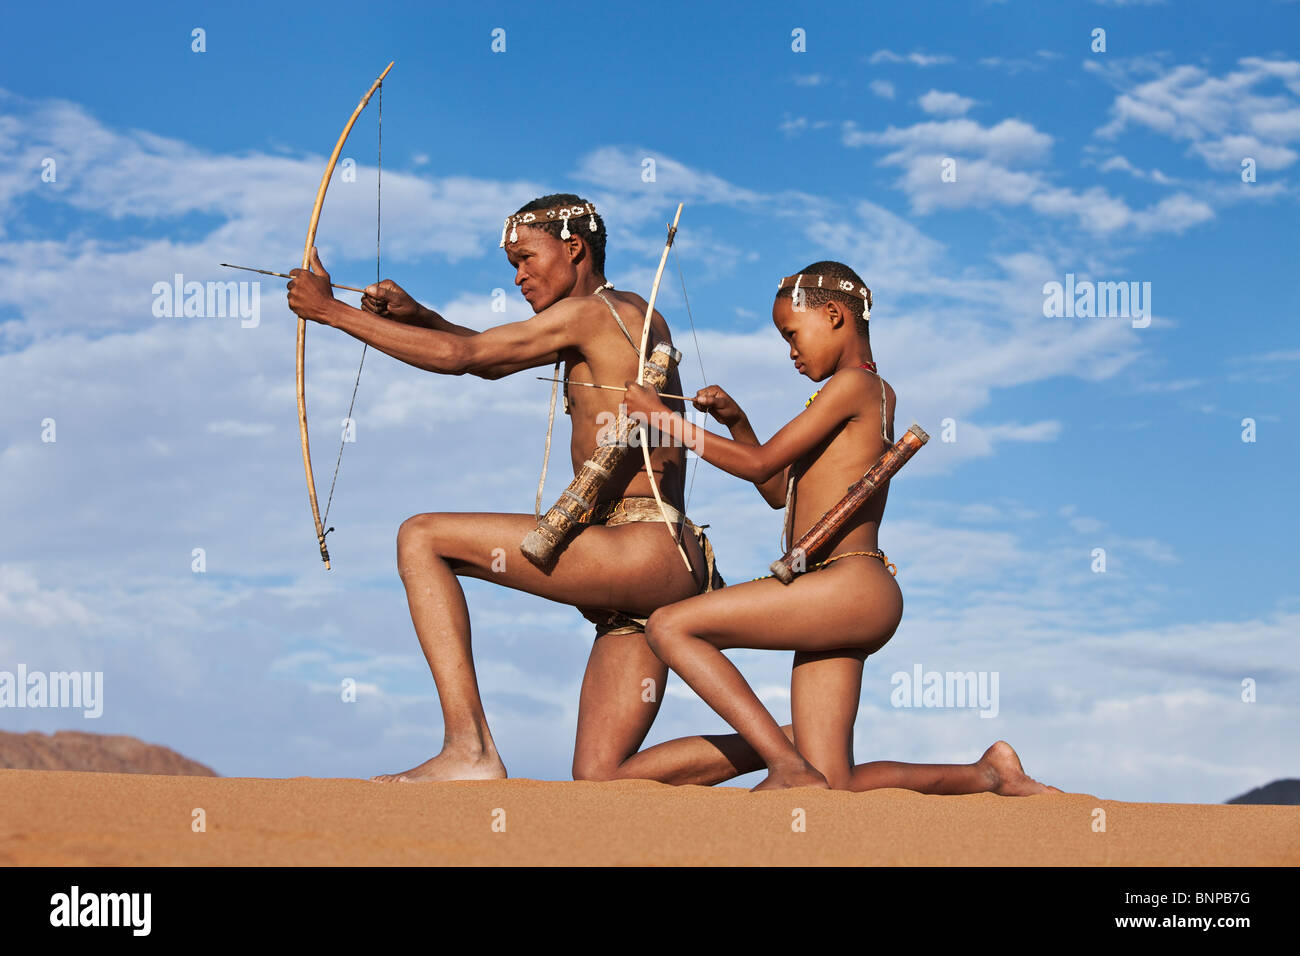 Bushman/pueblo San. San macho cazador armado con arco y flecha Foto de stock